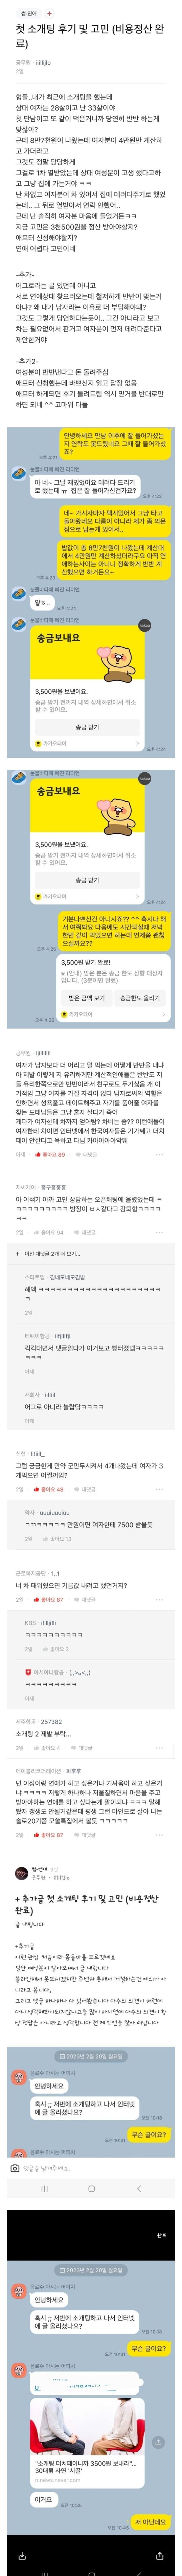 블라인드 소개팅 3500원남 후기